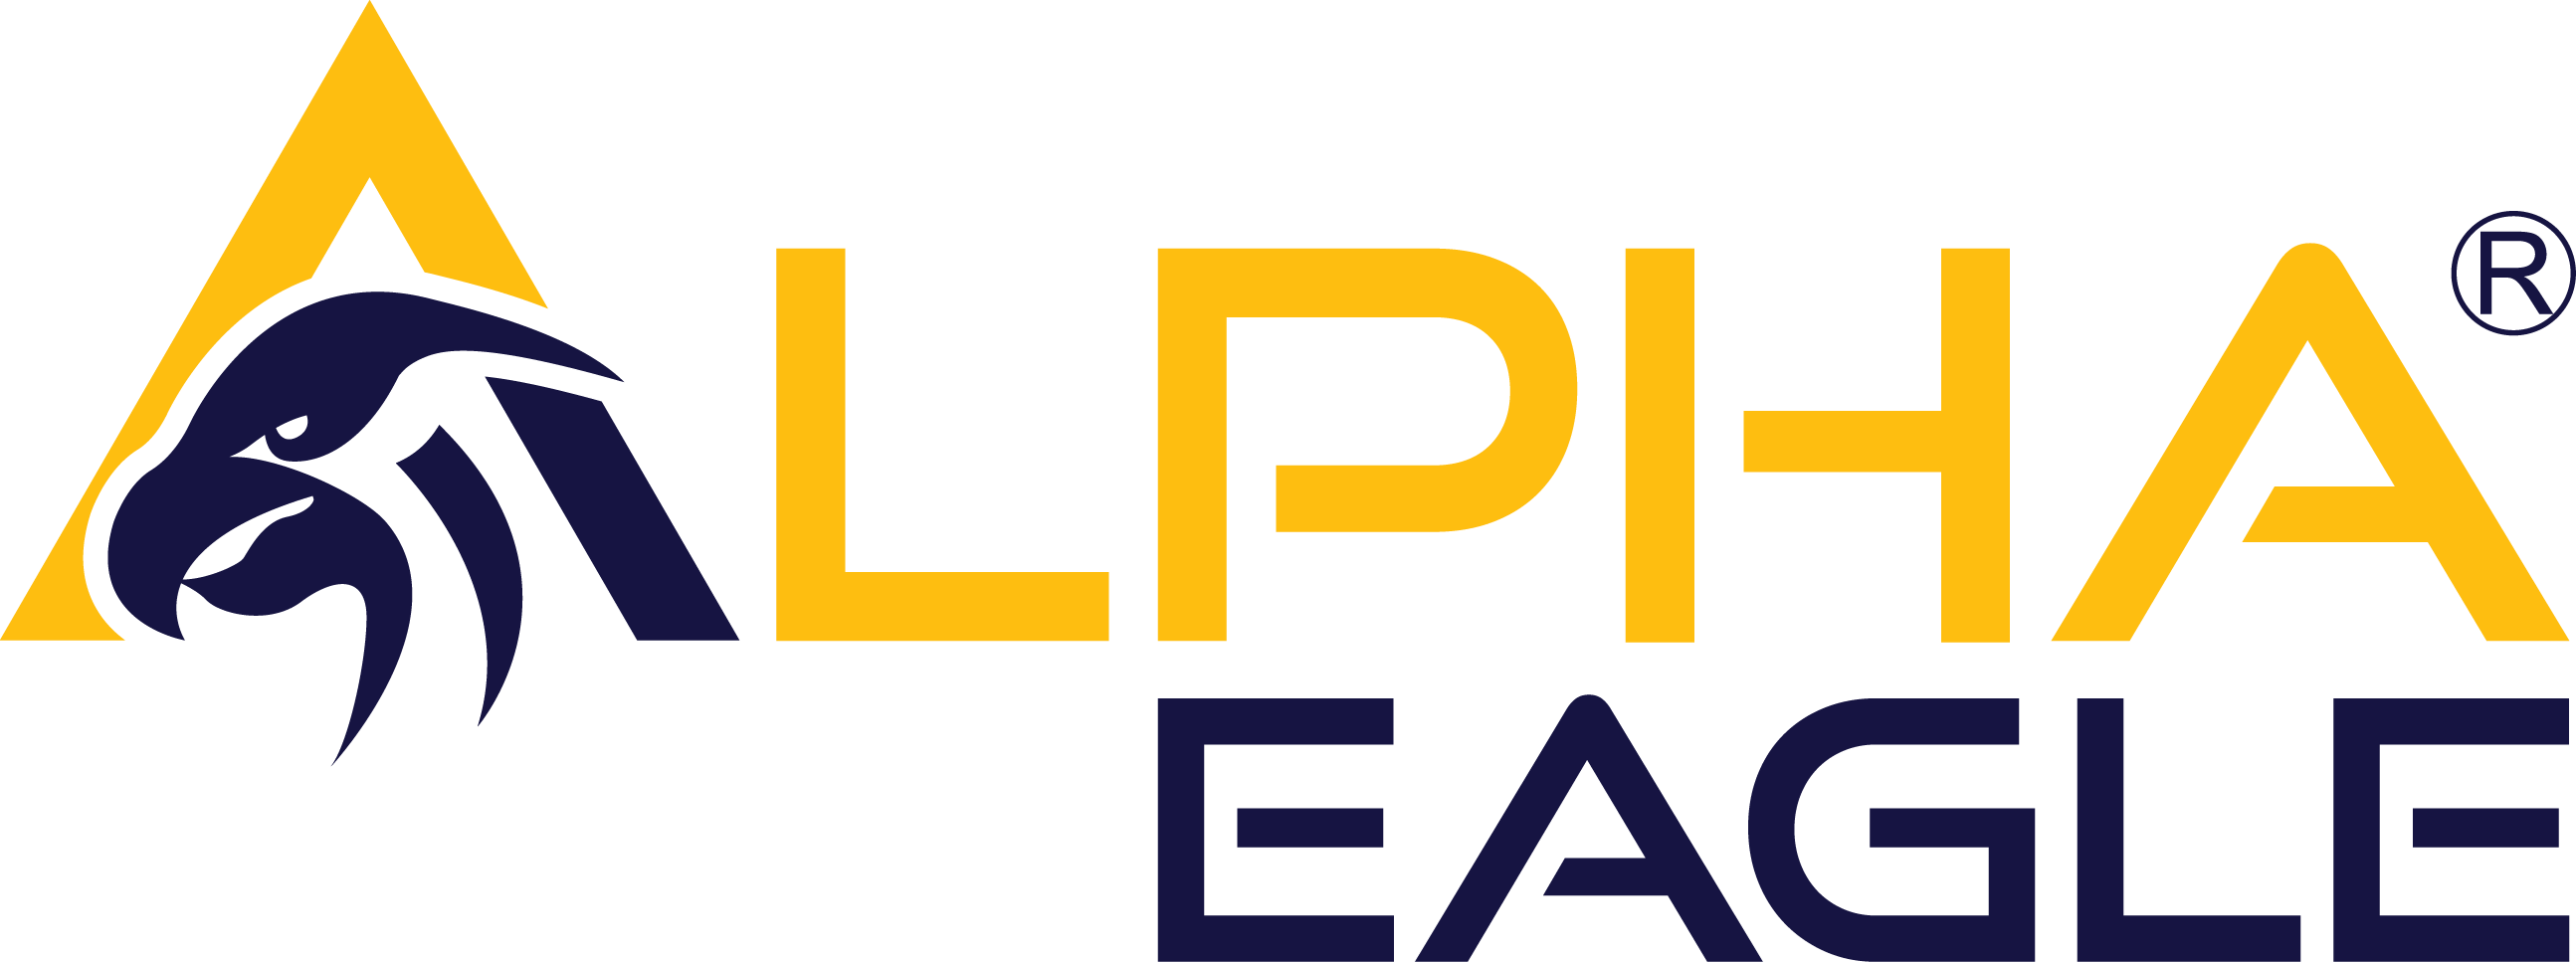 Eagle Aviation Logo - Alpha Eagle Aviation and Science Foundation Fund – alphaeagle.org